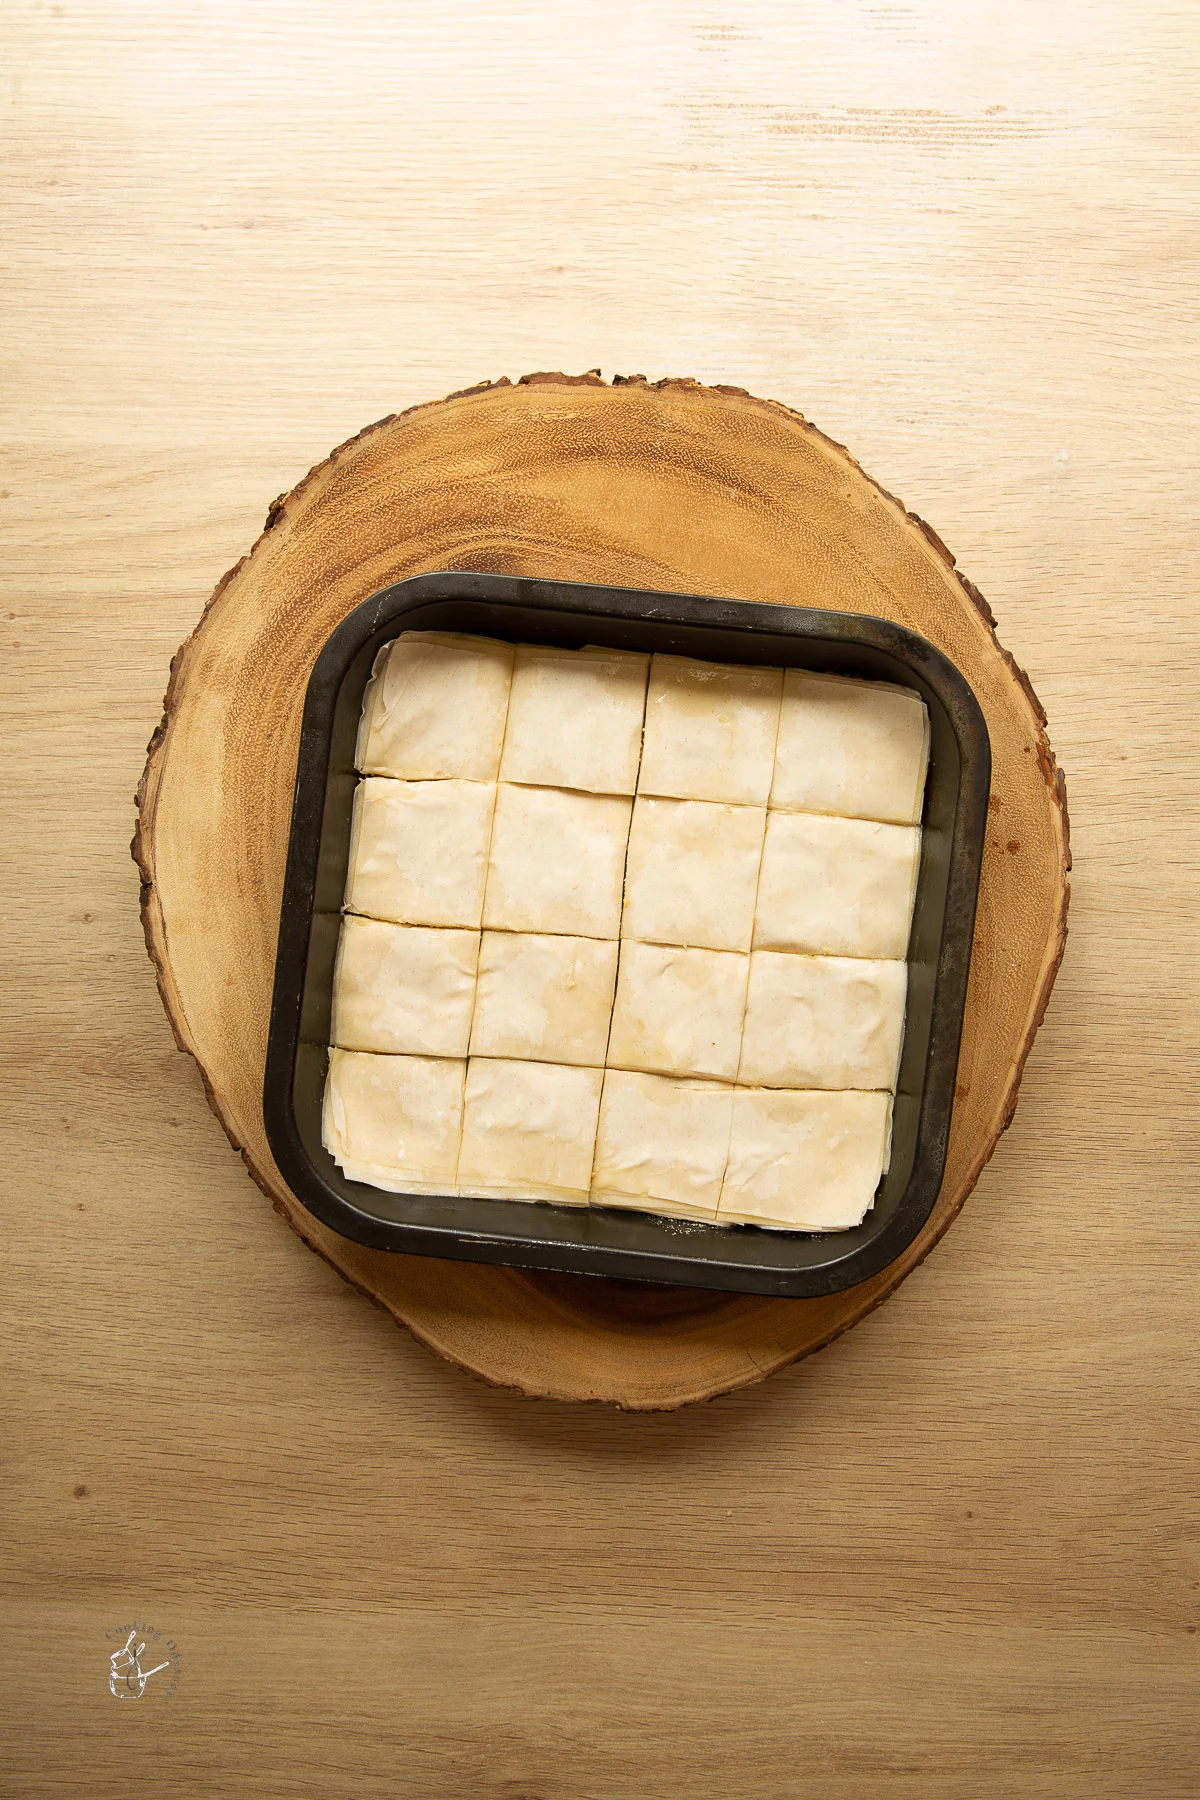 baklava pastry cut into pieces